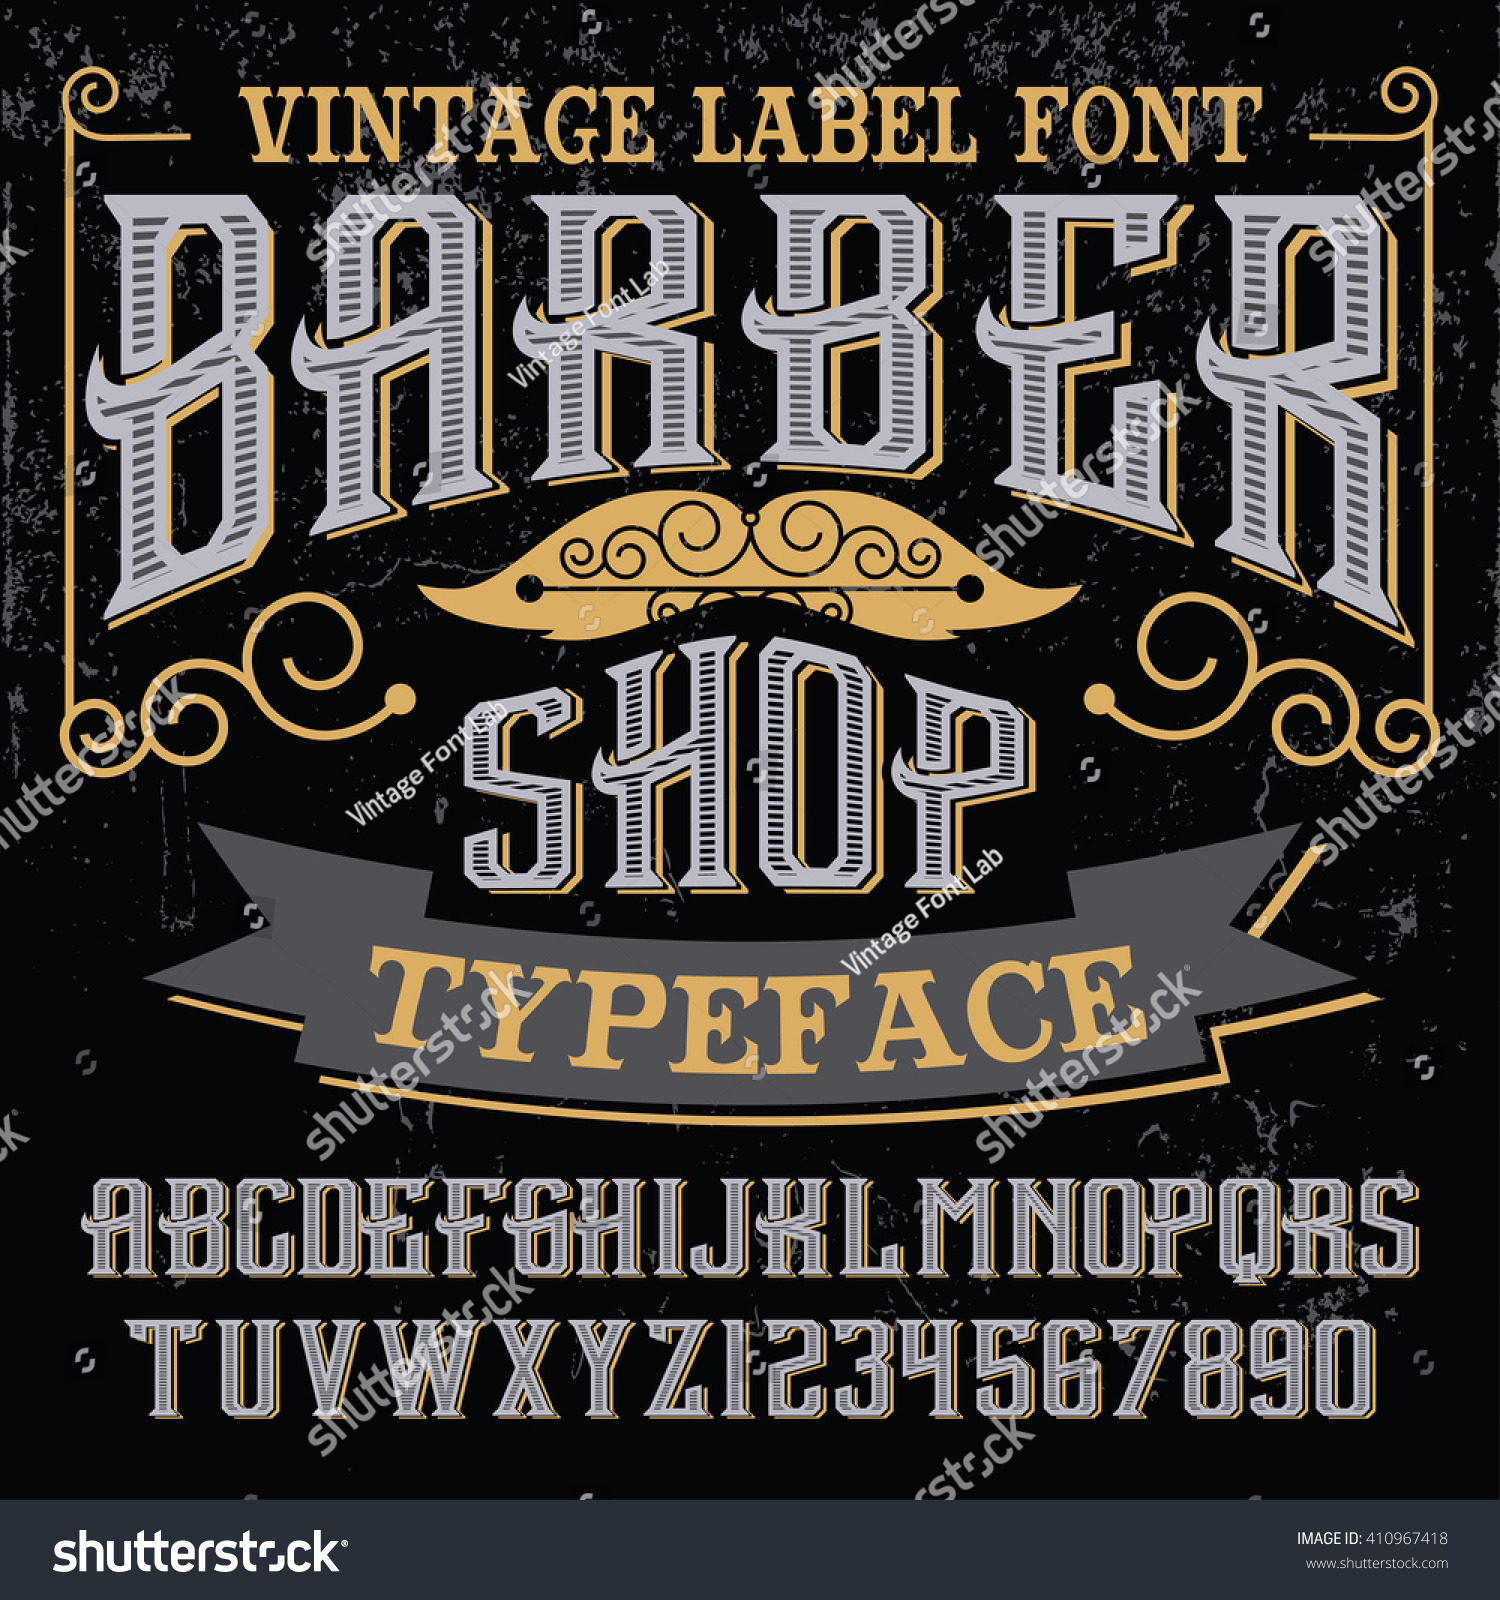 Download Vintage Label Font - Barber Shop - Vector Font, Vintage ...